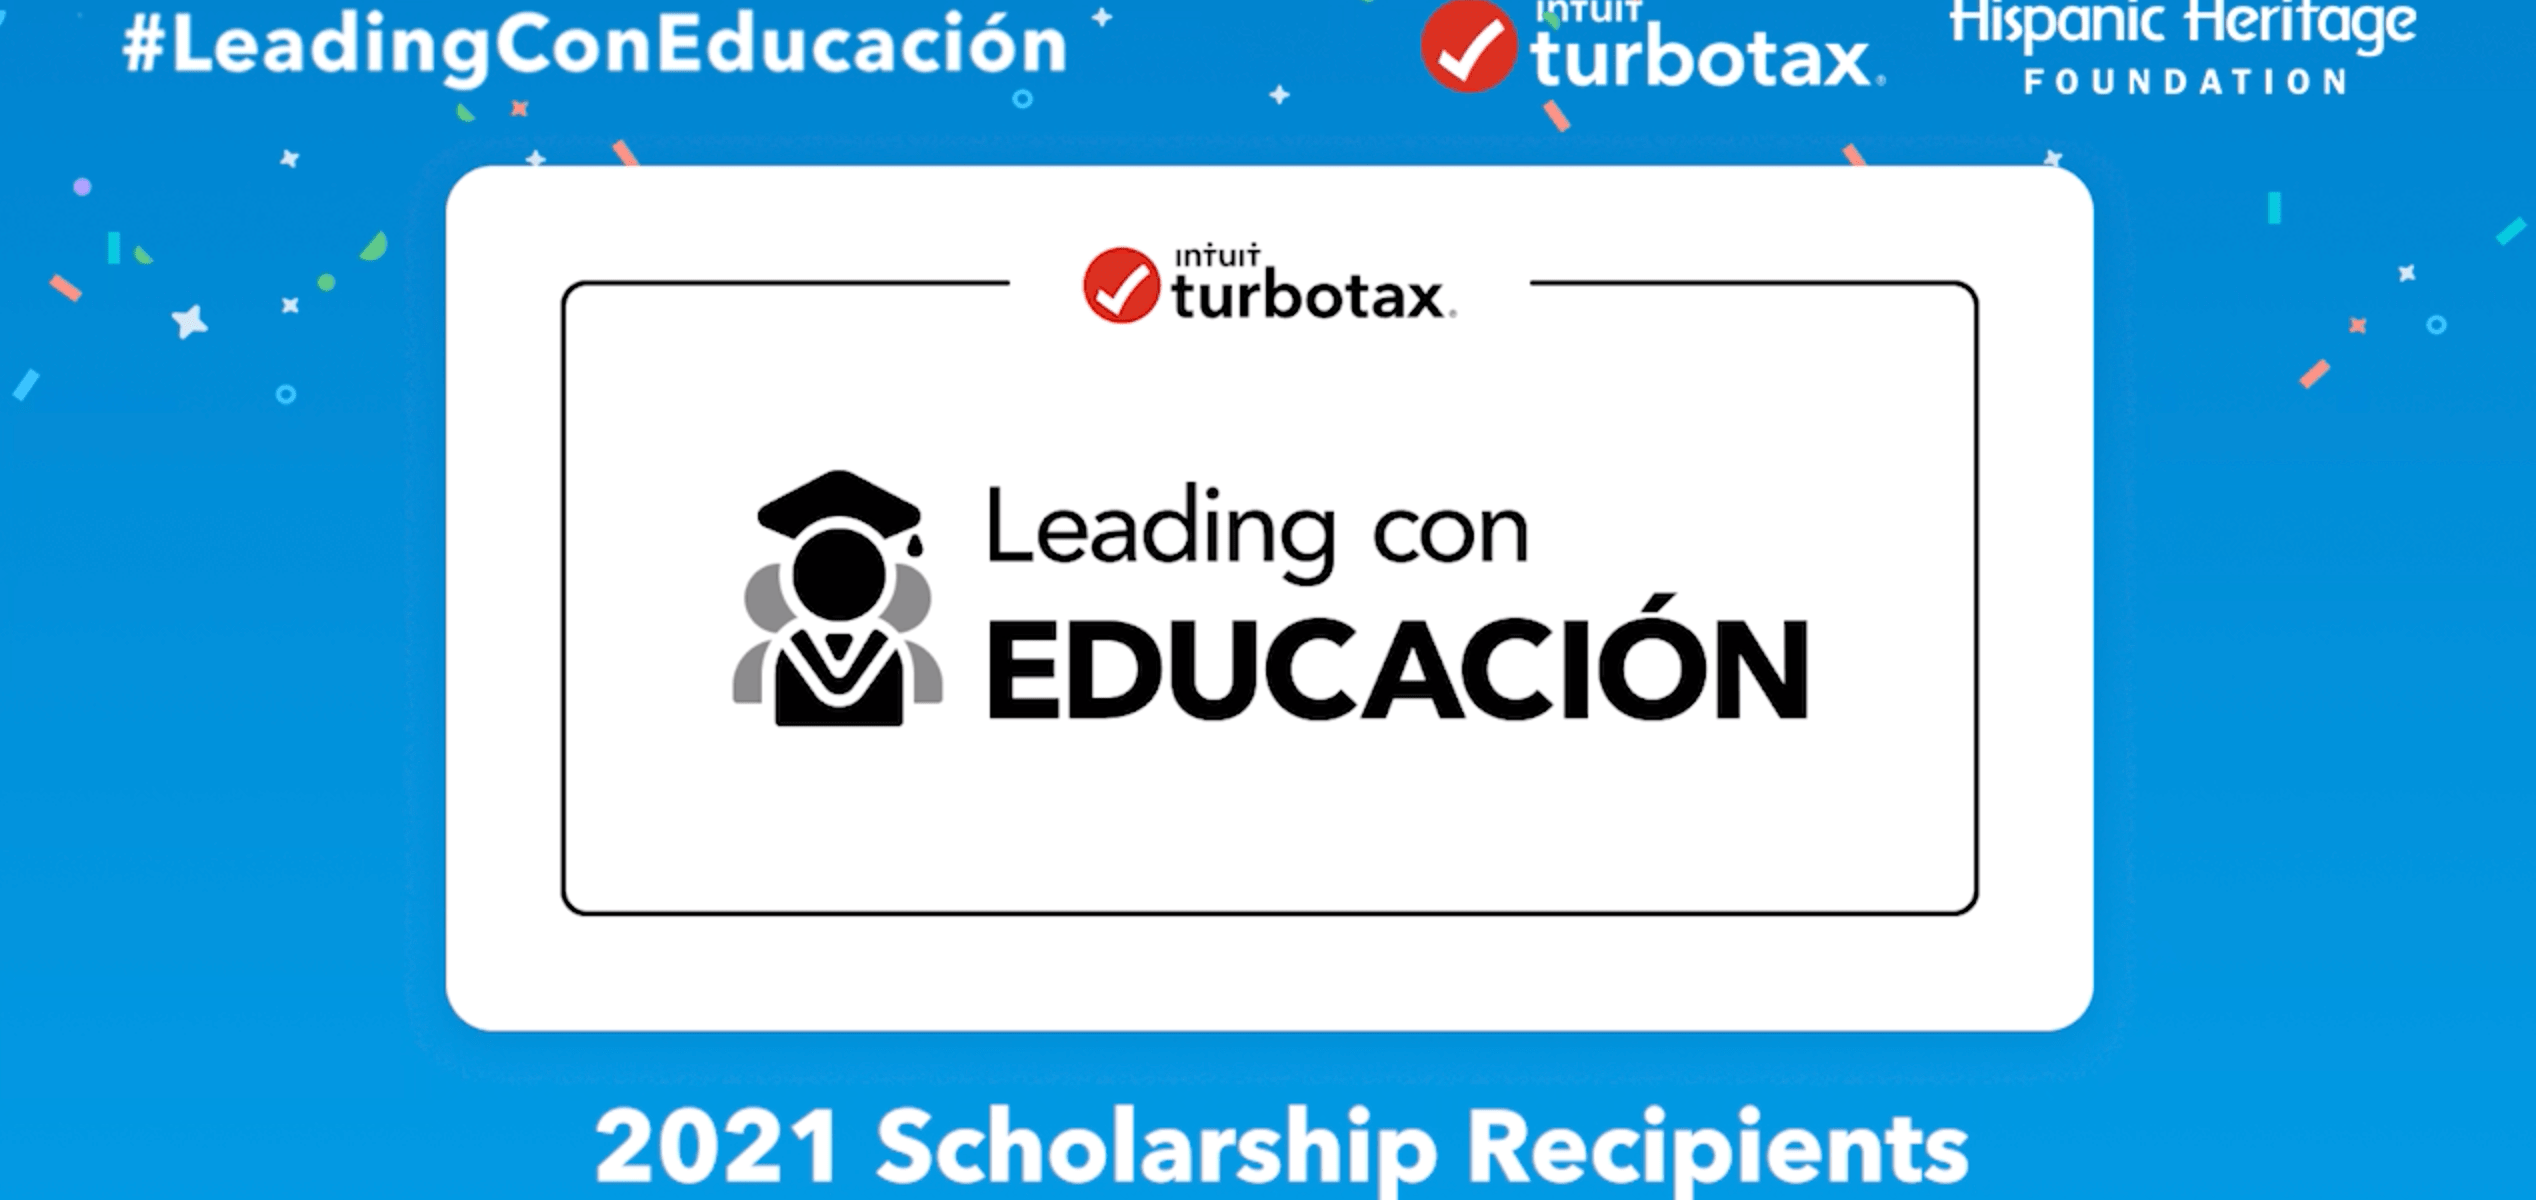 Congrats to this year’s #LeadingConEducación program scholarship recipients